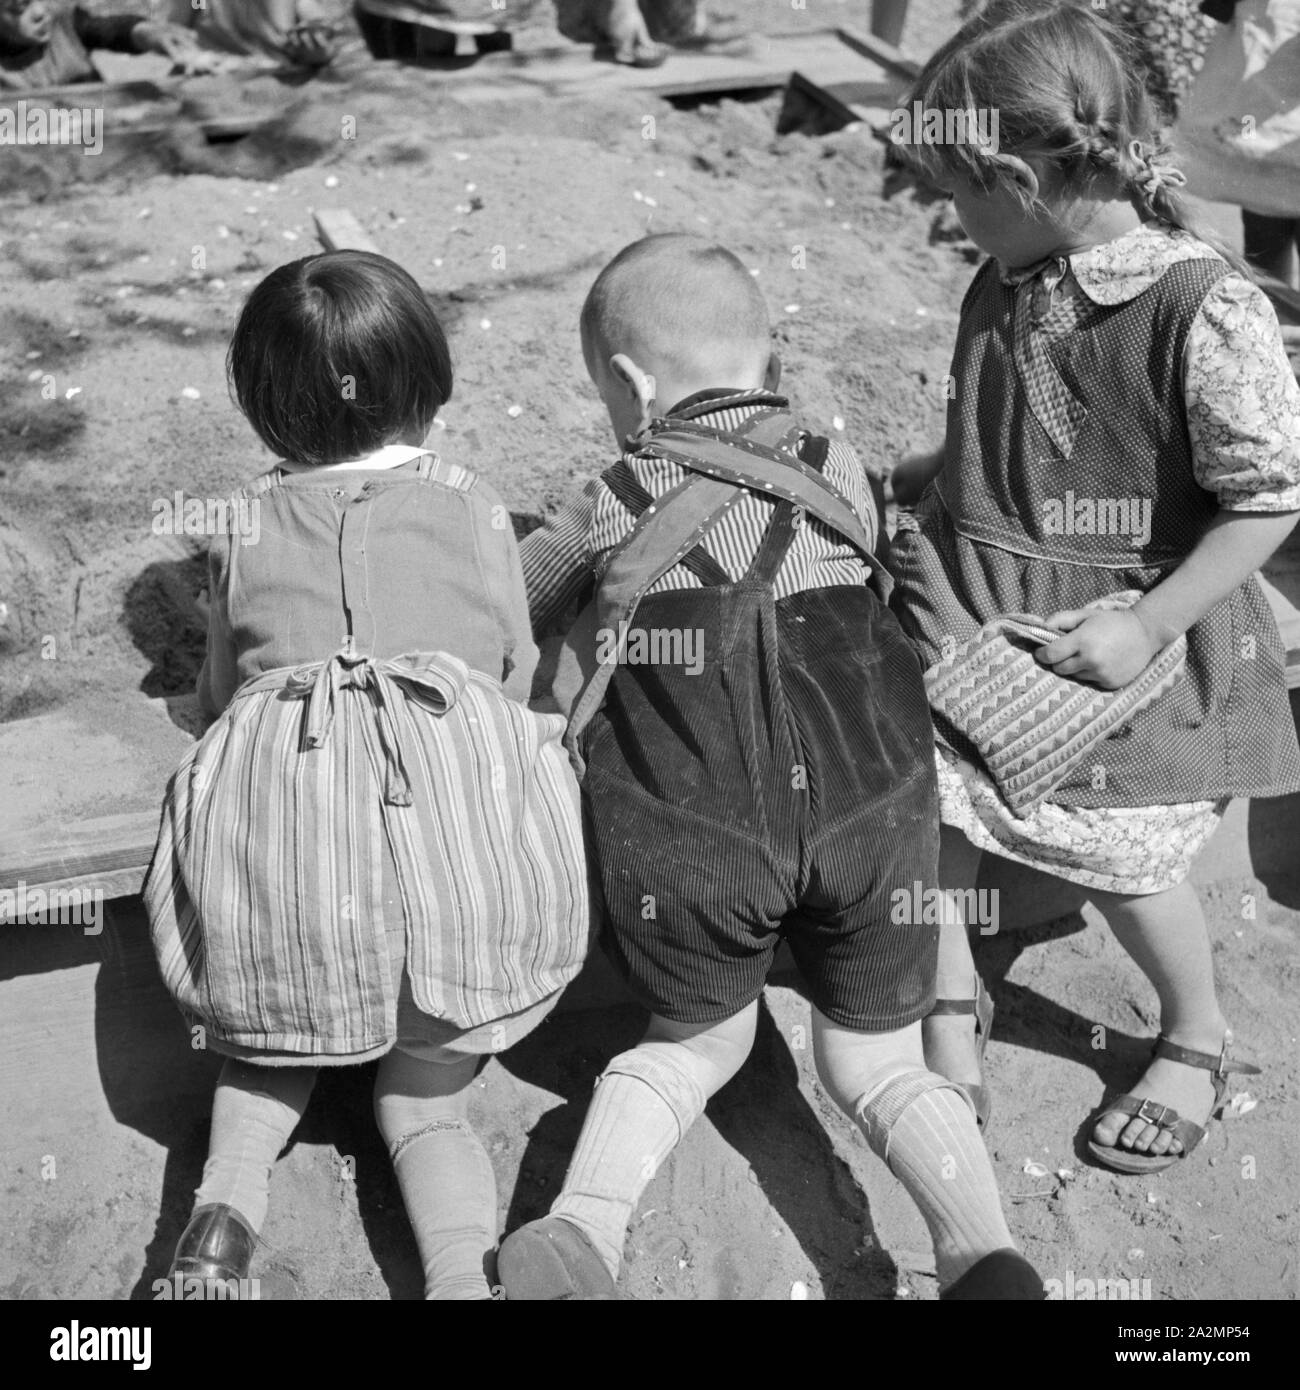 Kinder un einem Sandkasten, Deutschland 1930er Jahre. I bambini in un pallone, Germania 1930s. Foto Stock